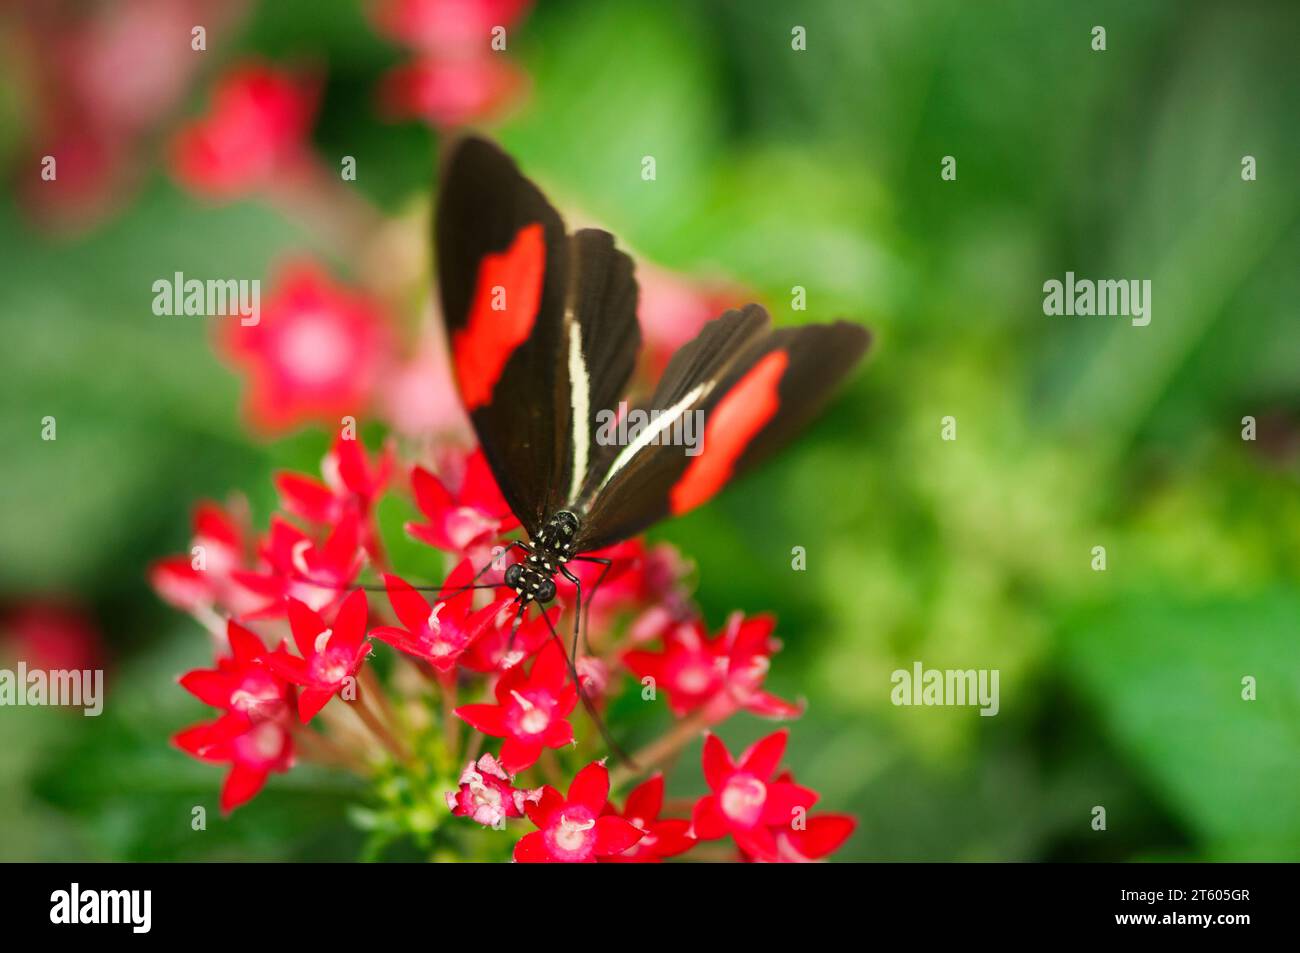 Erhöhte Frontalansicht eines kleinen Postman-Schmetterlings (lat: Helisonius erato), der auf einer roten umbelartigen Blume sitzt, vor einem natürlichen grünen, verschwommenen Blatt Stockfoto